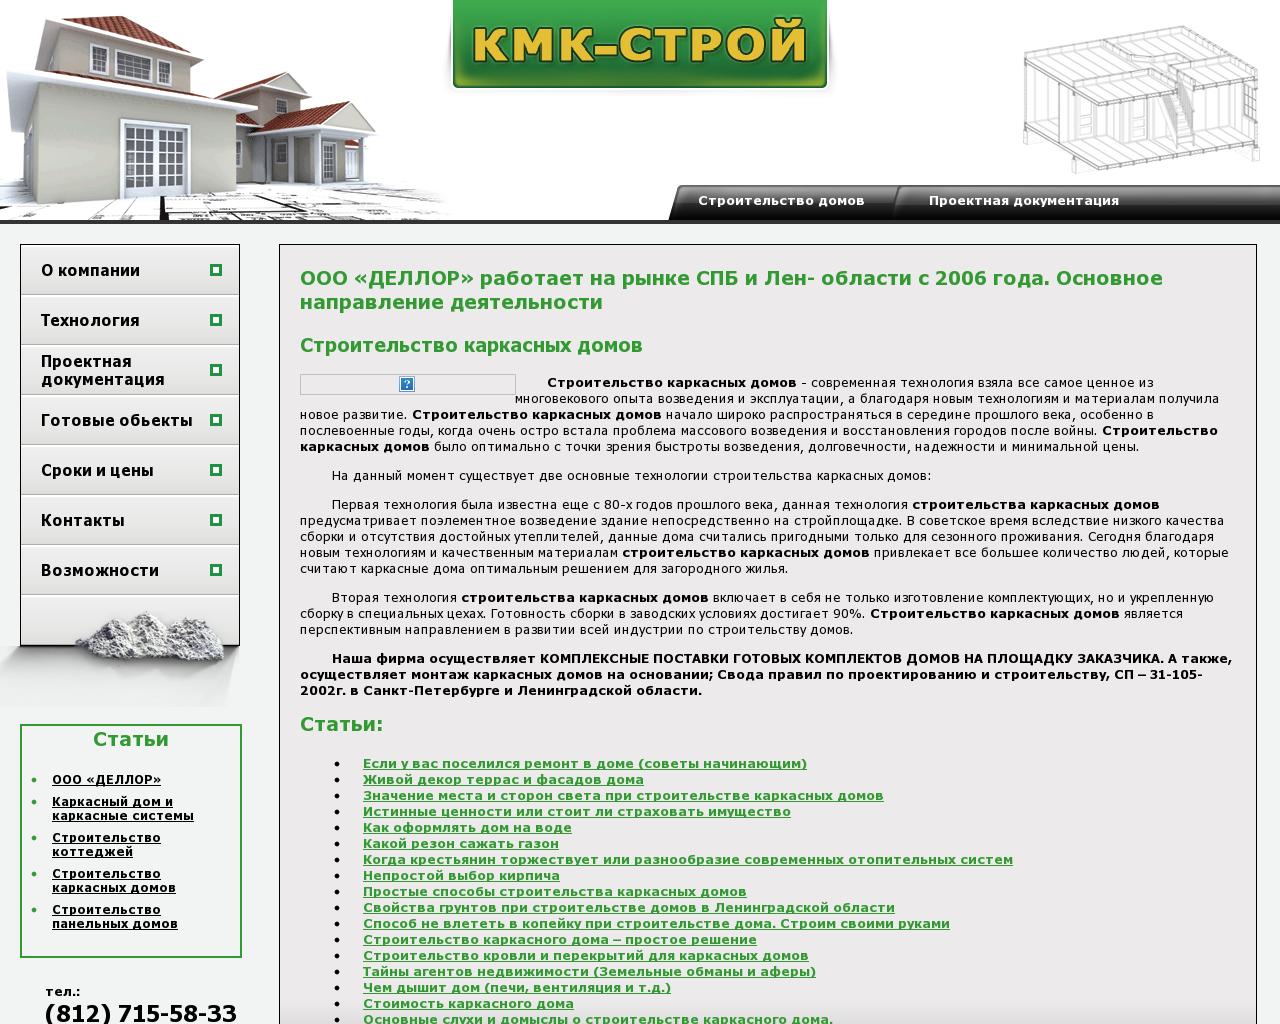 Изображение сайта kmkstroy.ru в разрешении 1280x1024